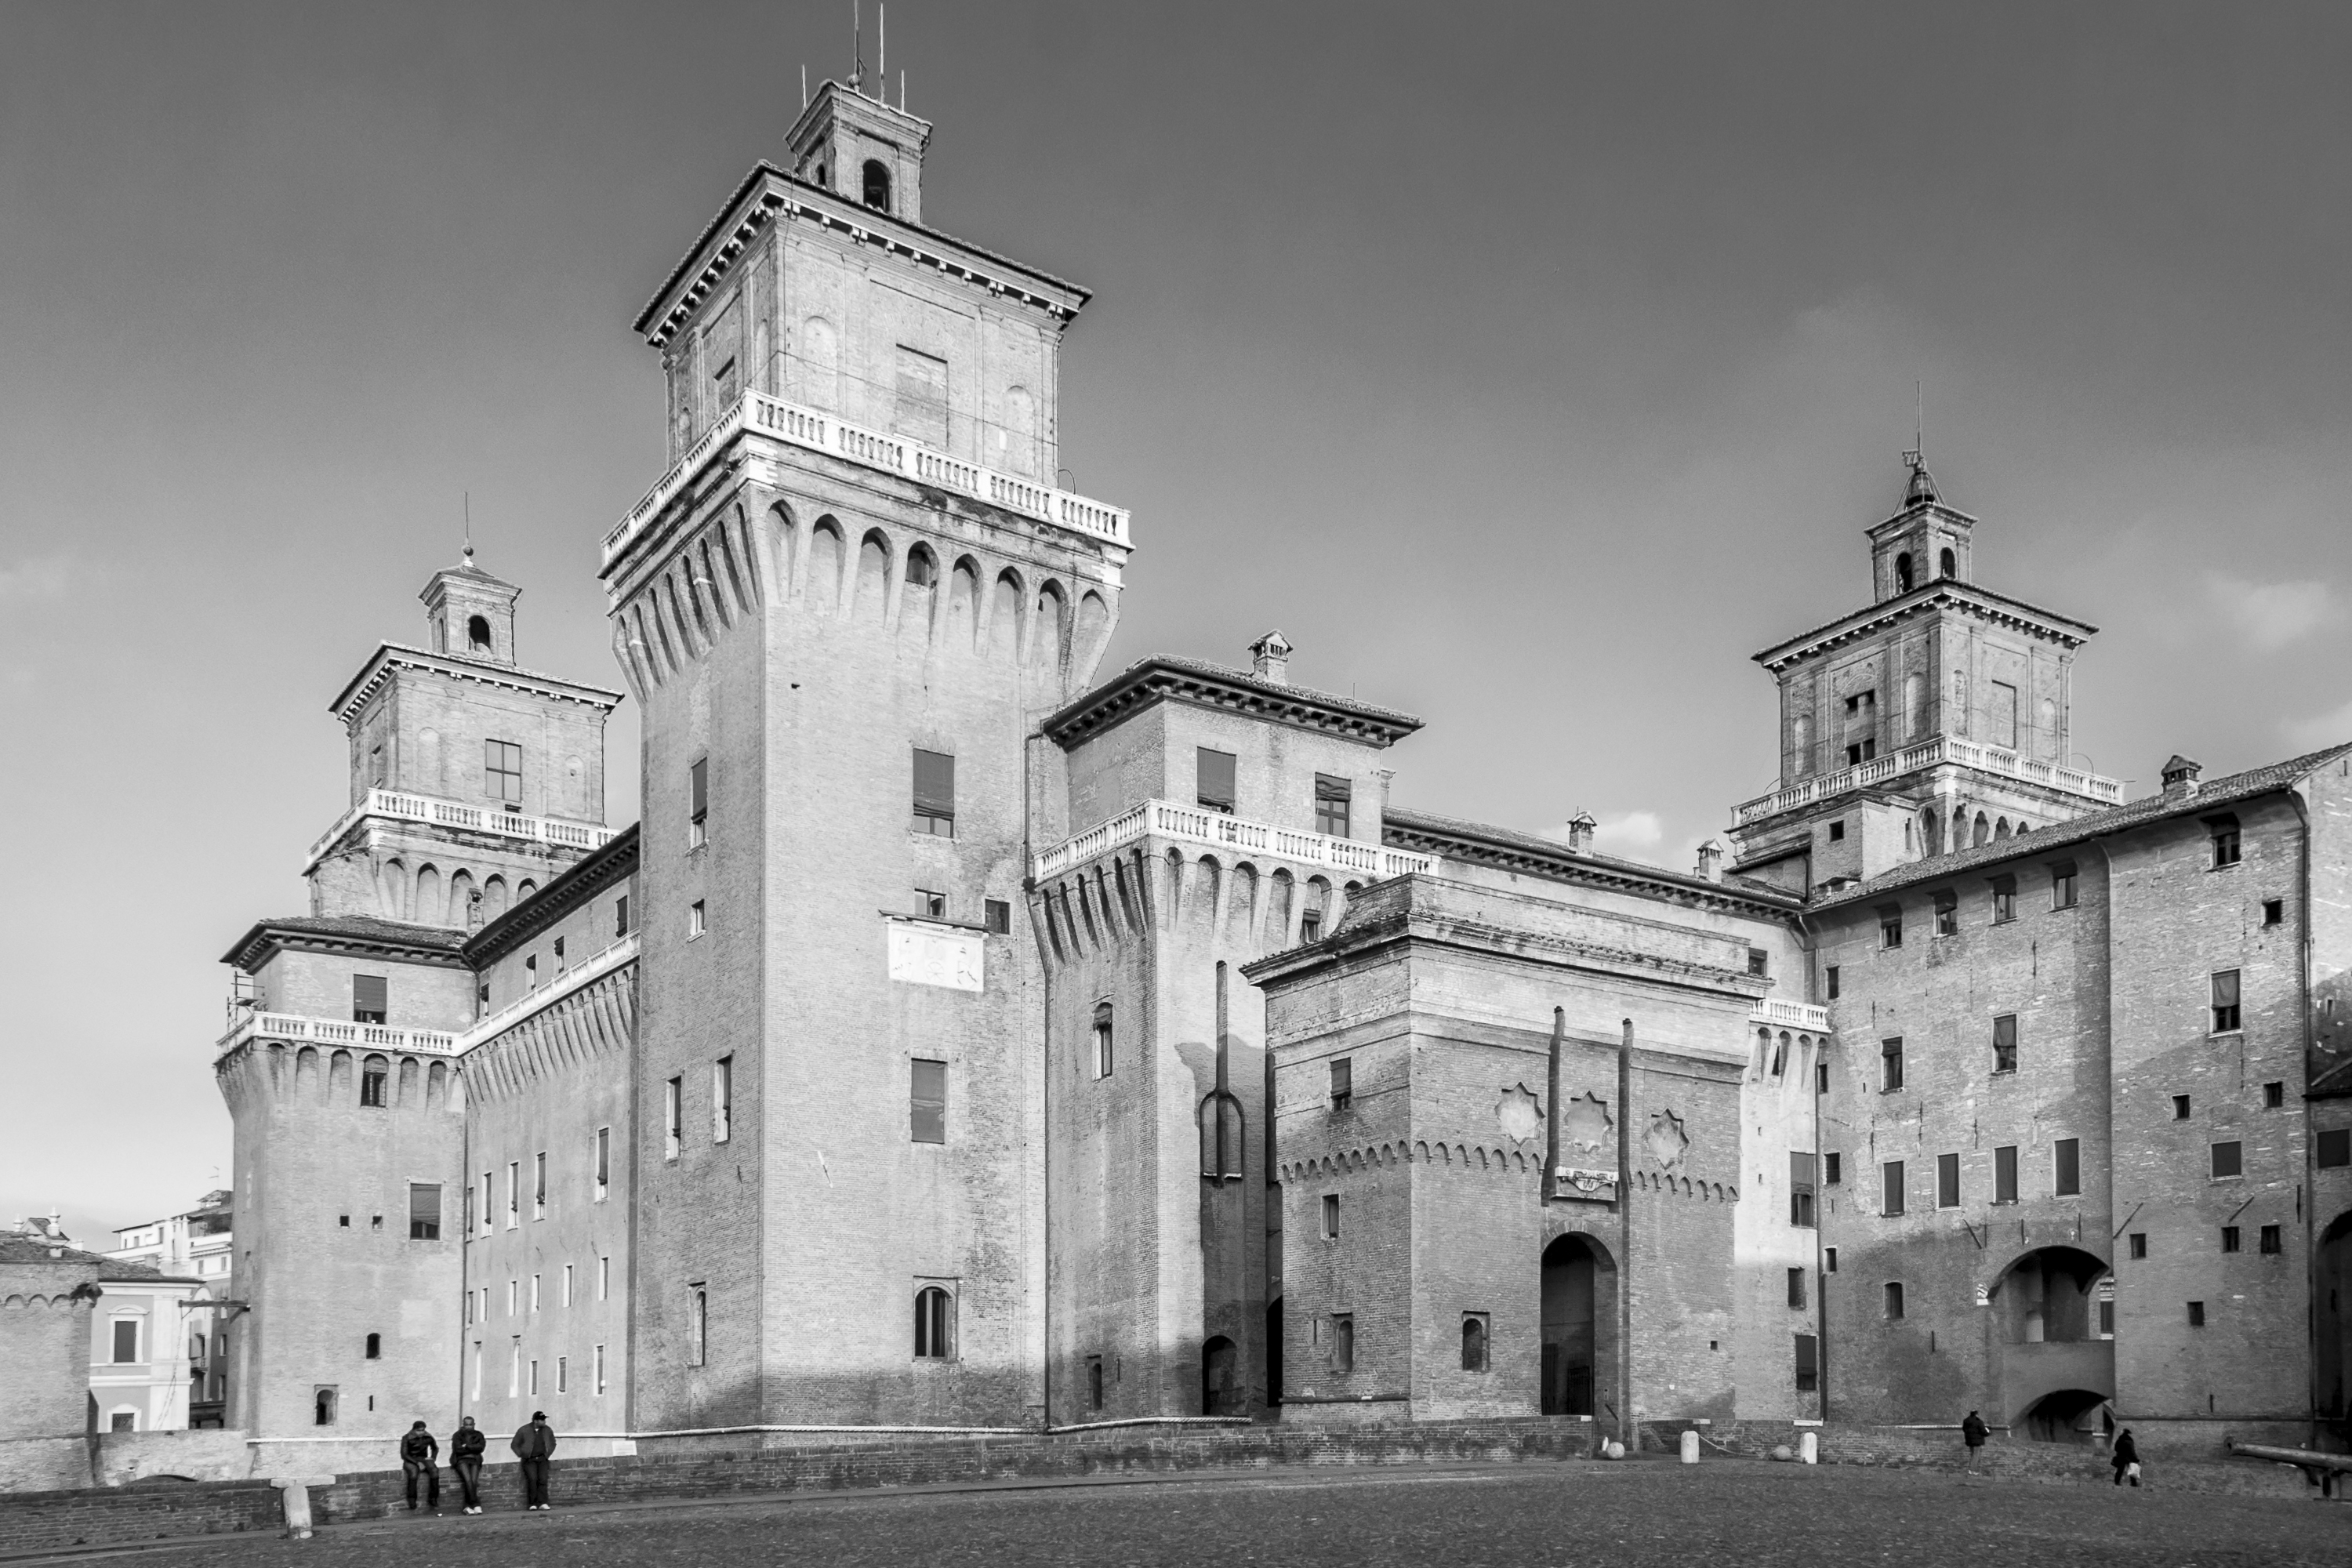 photo: https://upload.wikimedia.org/wikipedia/commons/3/31/Castello_Estense--.jpg